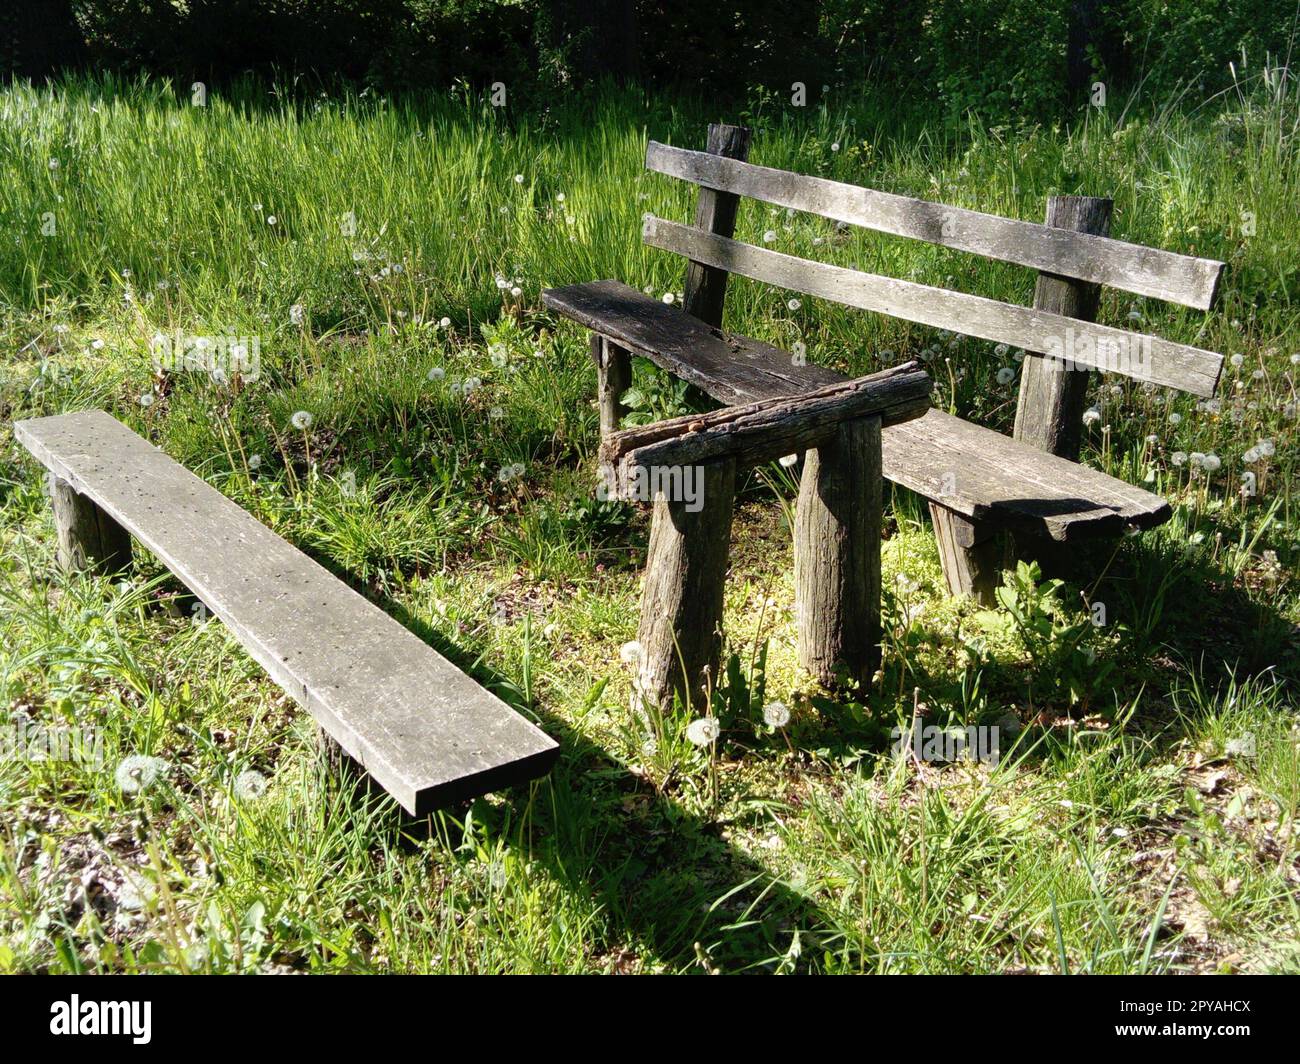 Picknicktisch und Bank aus Holz in einem Wald. Ruhiger Ort. Sommer und grünes Gras Stockfoto